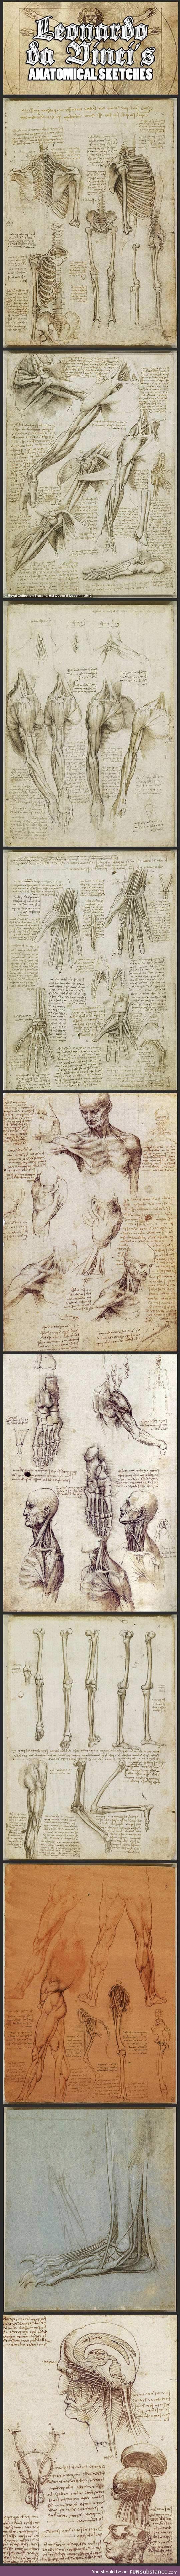 Leonardo Da Vinci's Original Anatomical Sketches